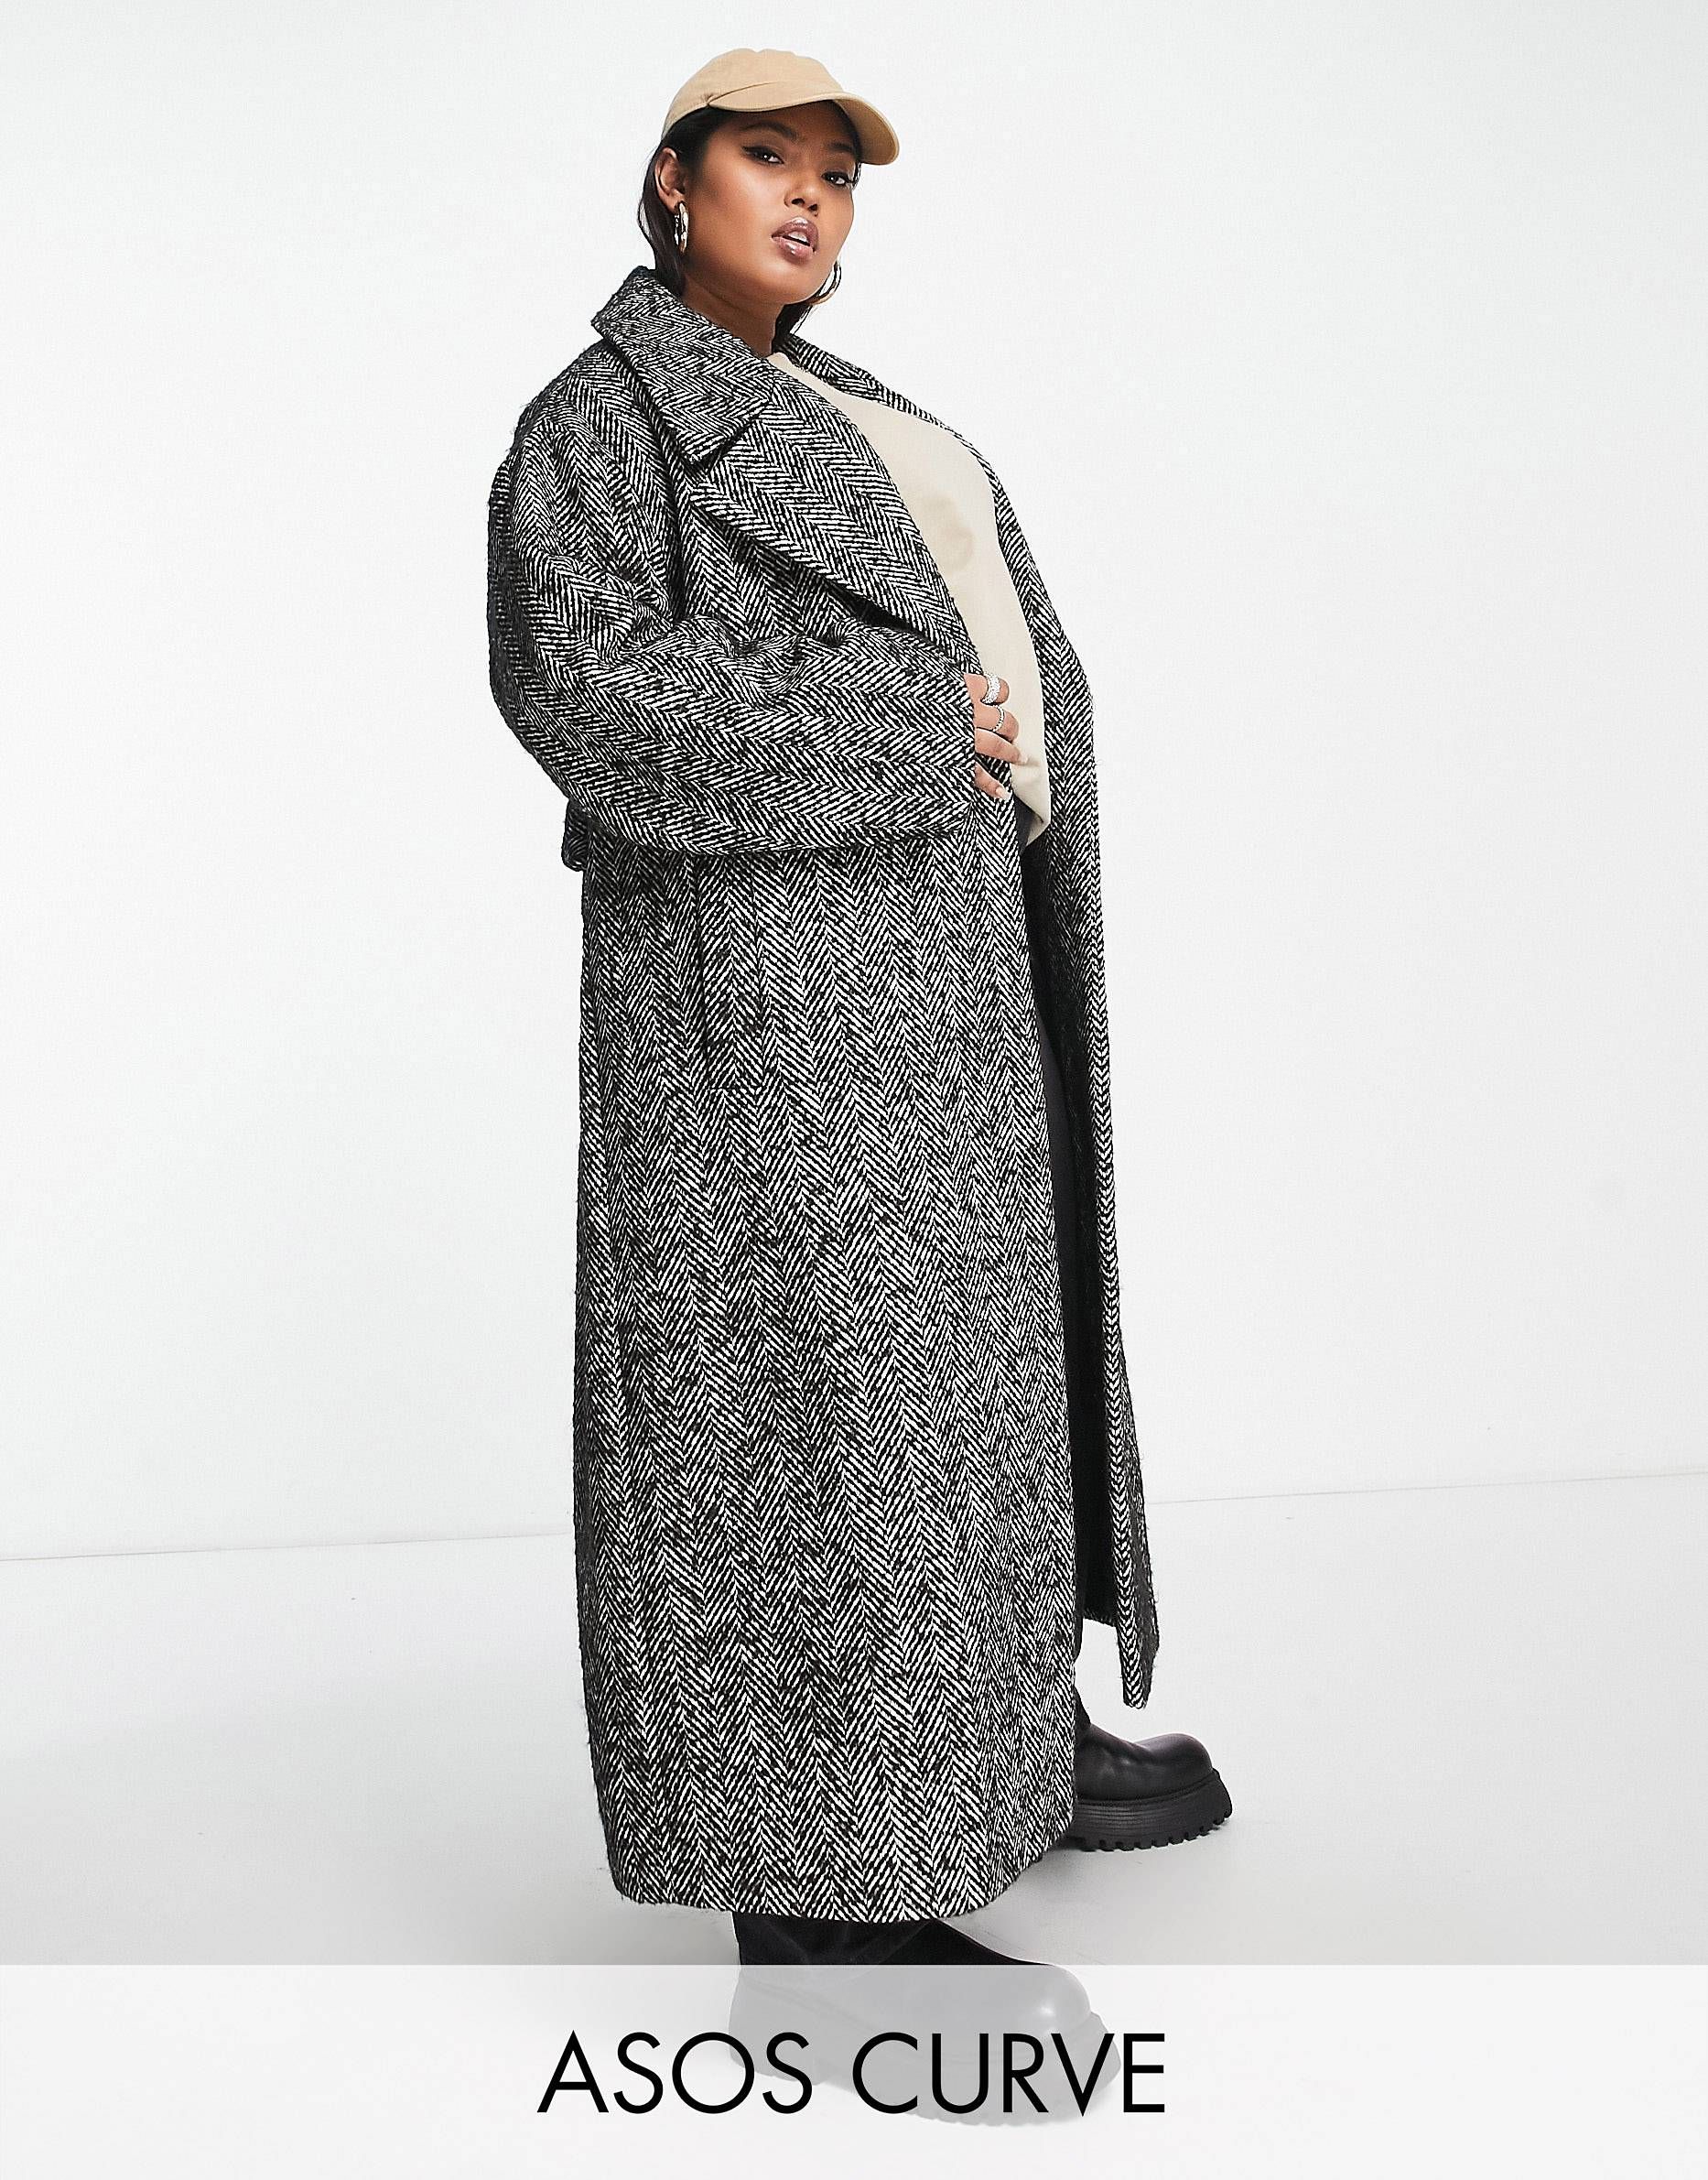 ASOS DESIGN Curve - Manteau habillé ceinturé à chevrons - Noir et blanc | ASOS (Global)